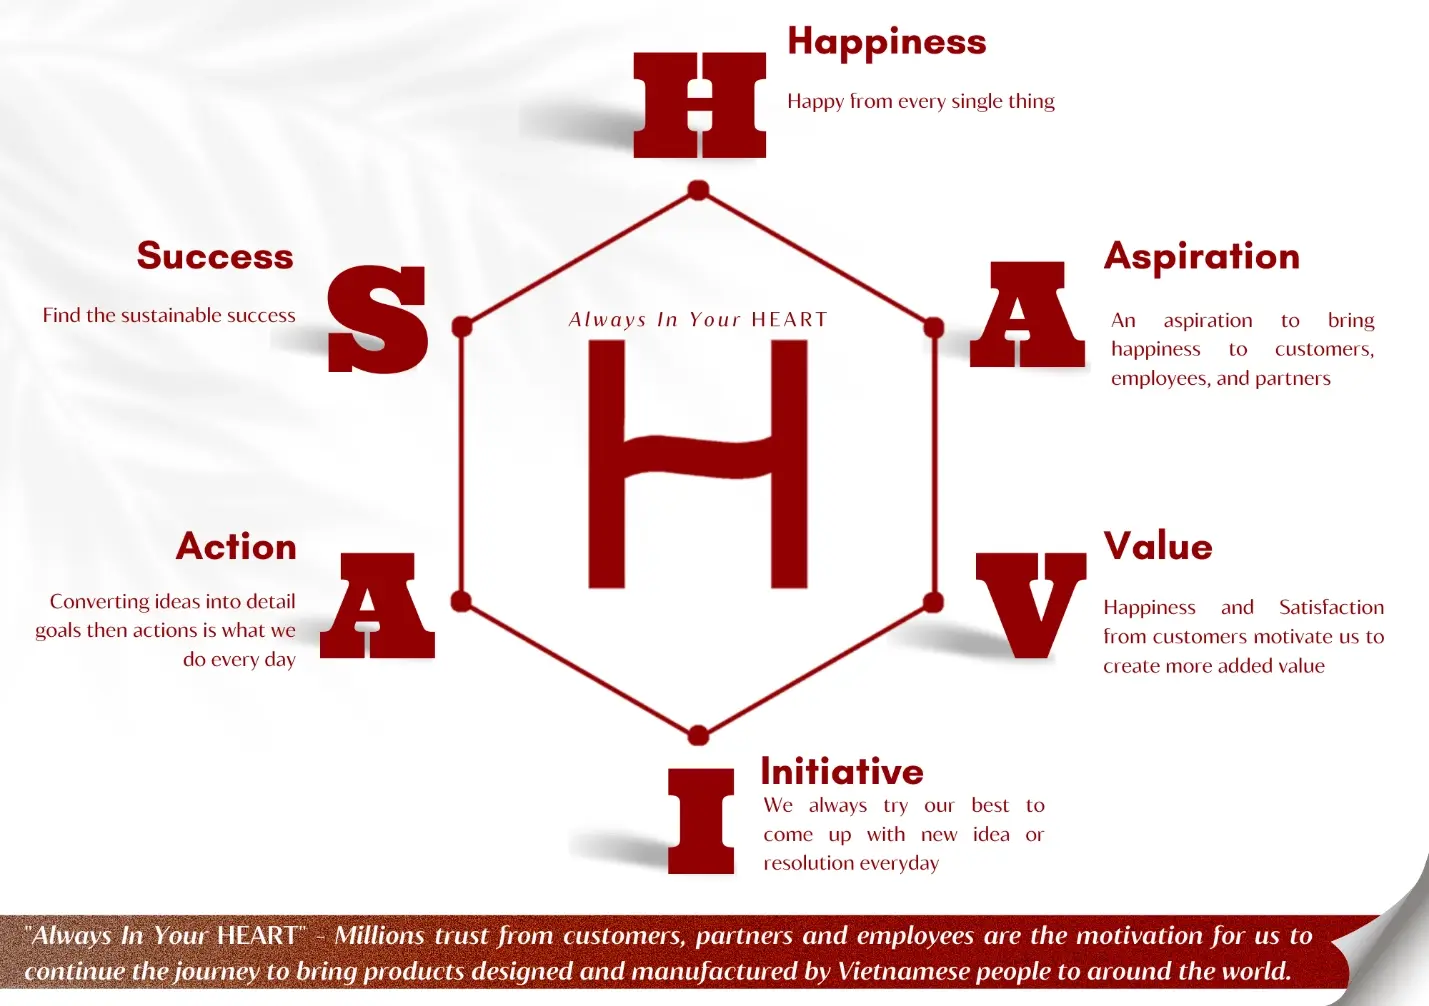 Havias là gì - Happiness, Aspiration, Value, Initiative, Action, Success